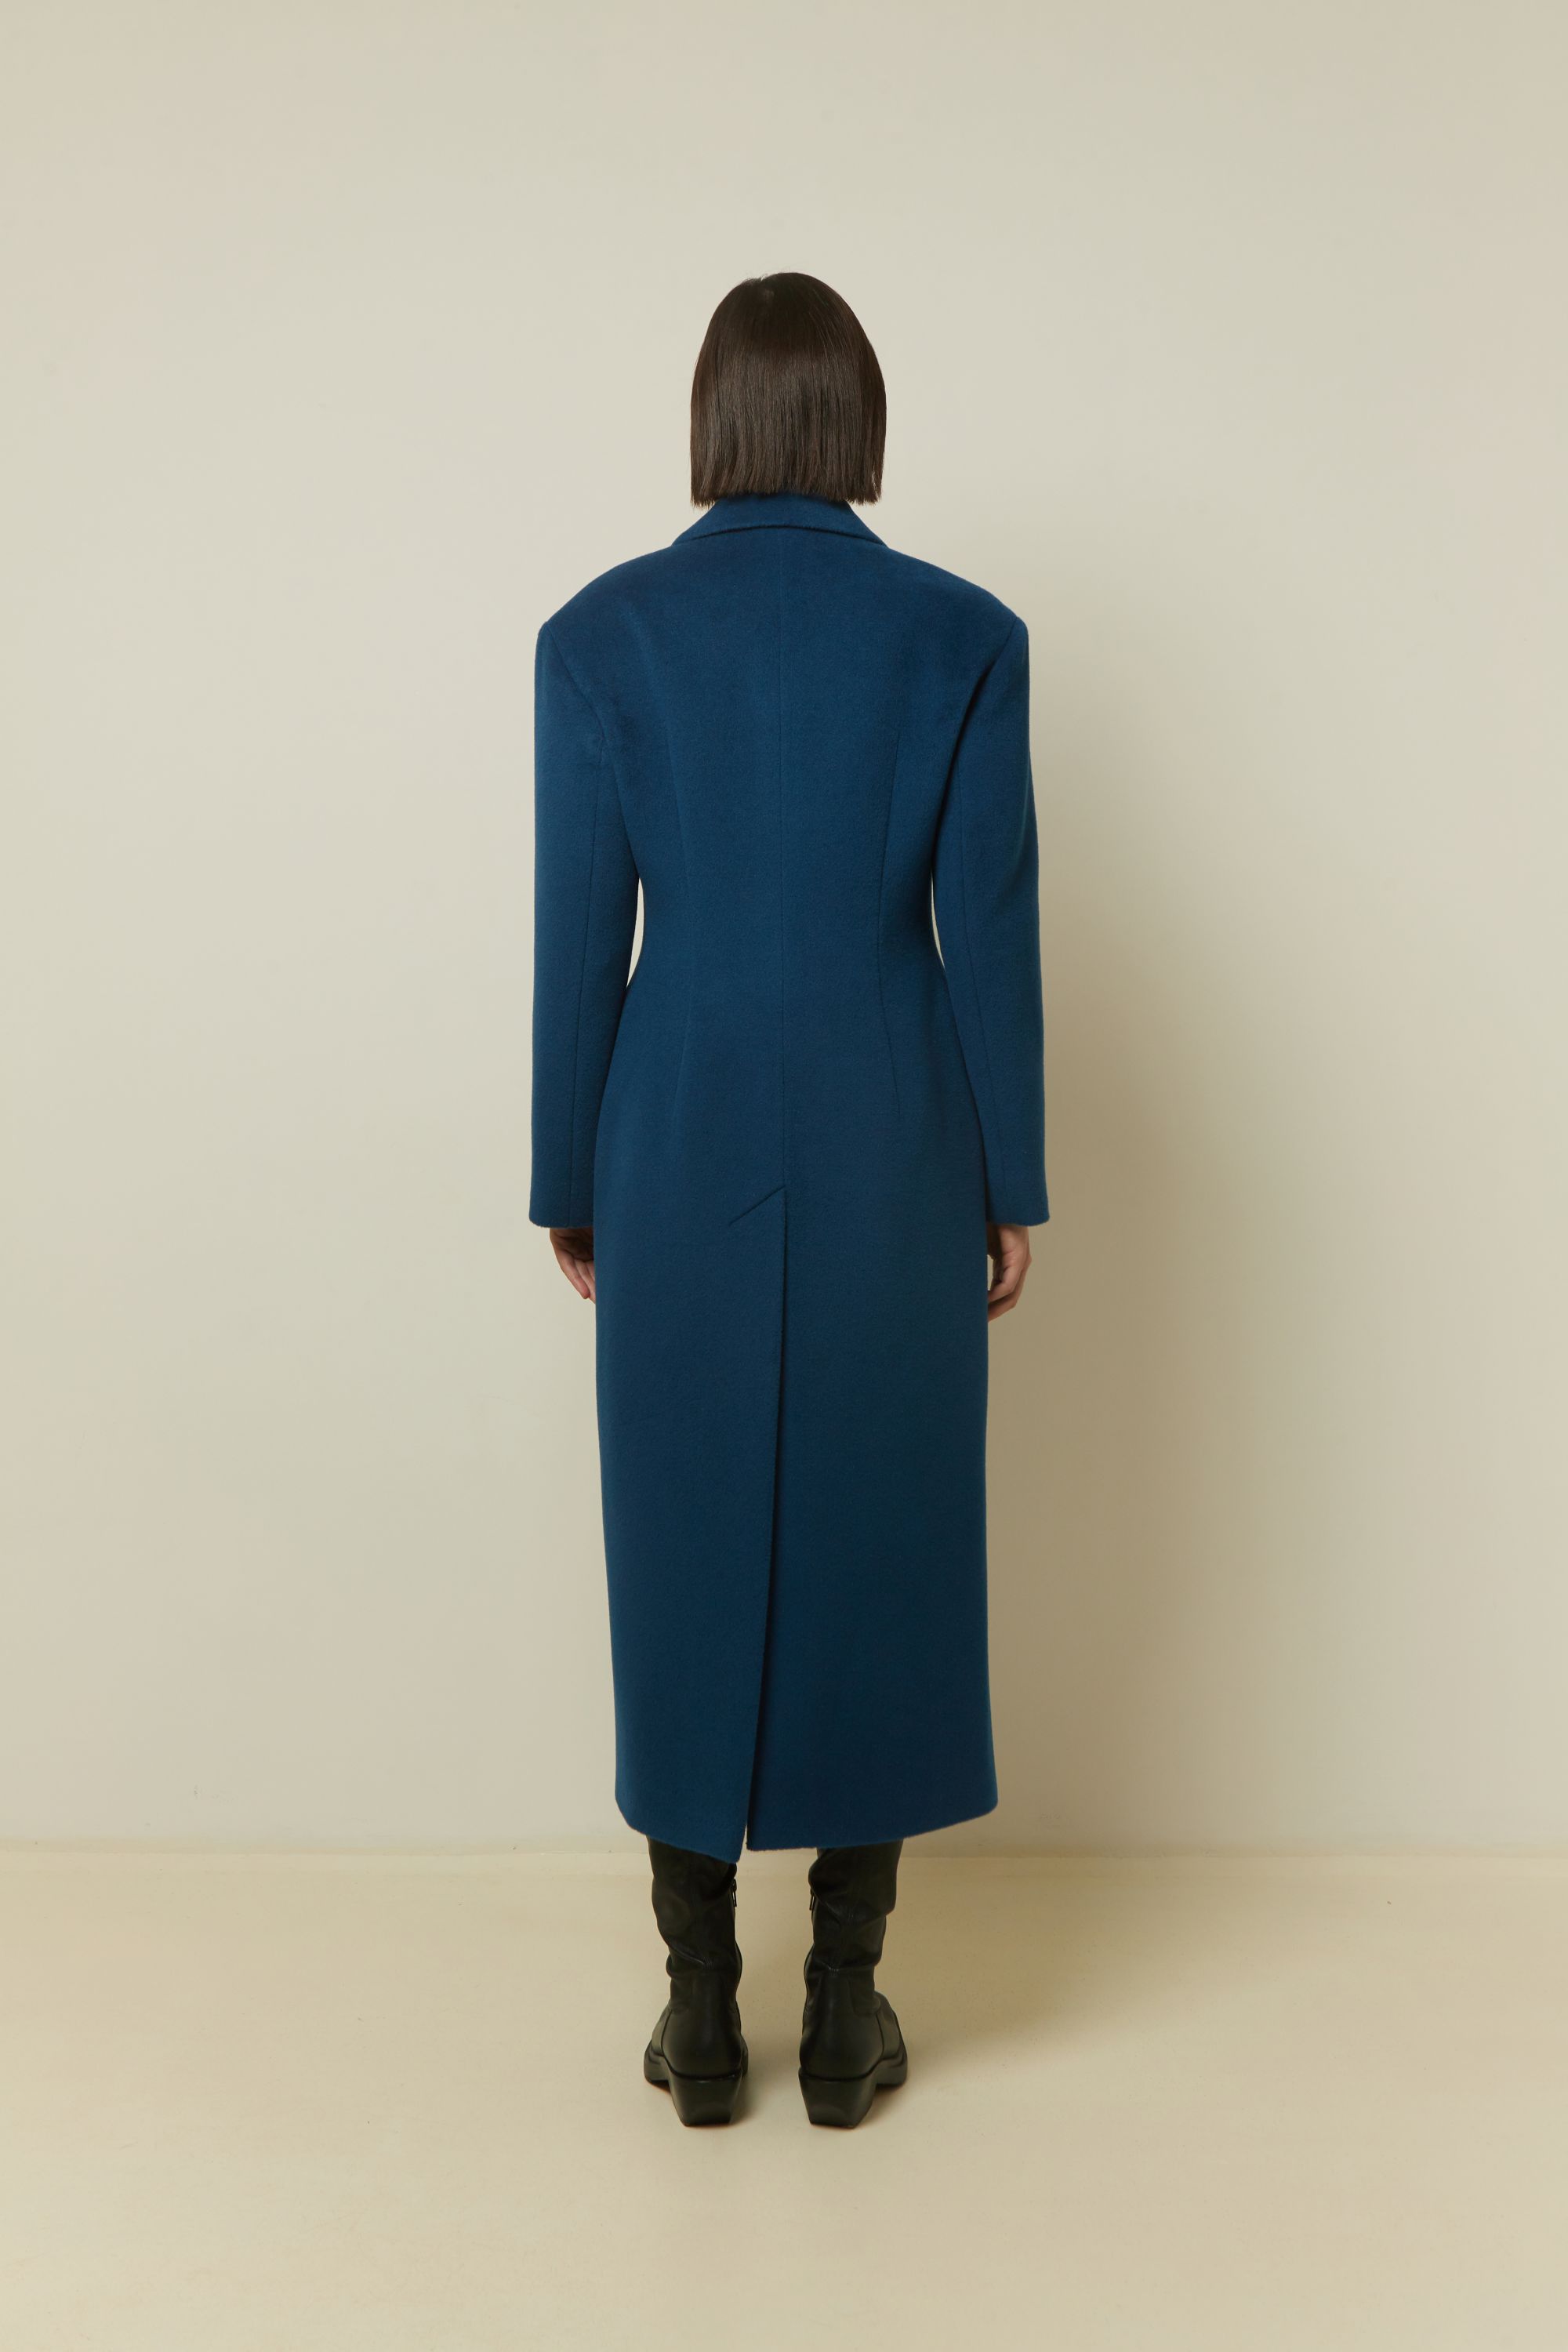 Пальто женское демисезонное 1-09. Фото 4.